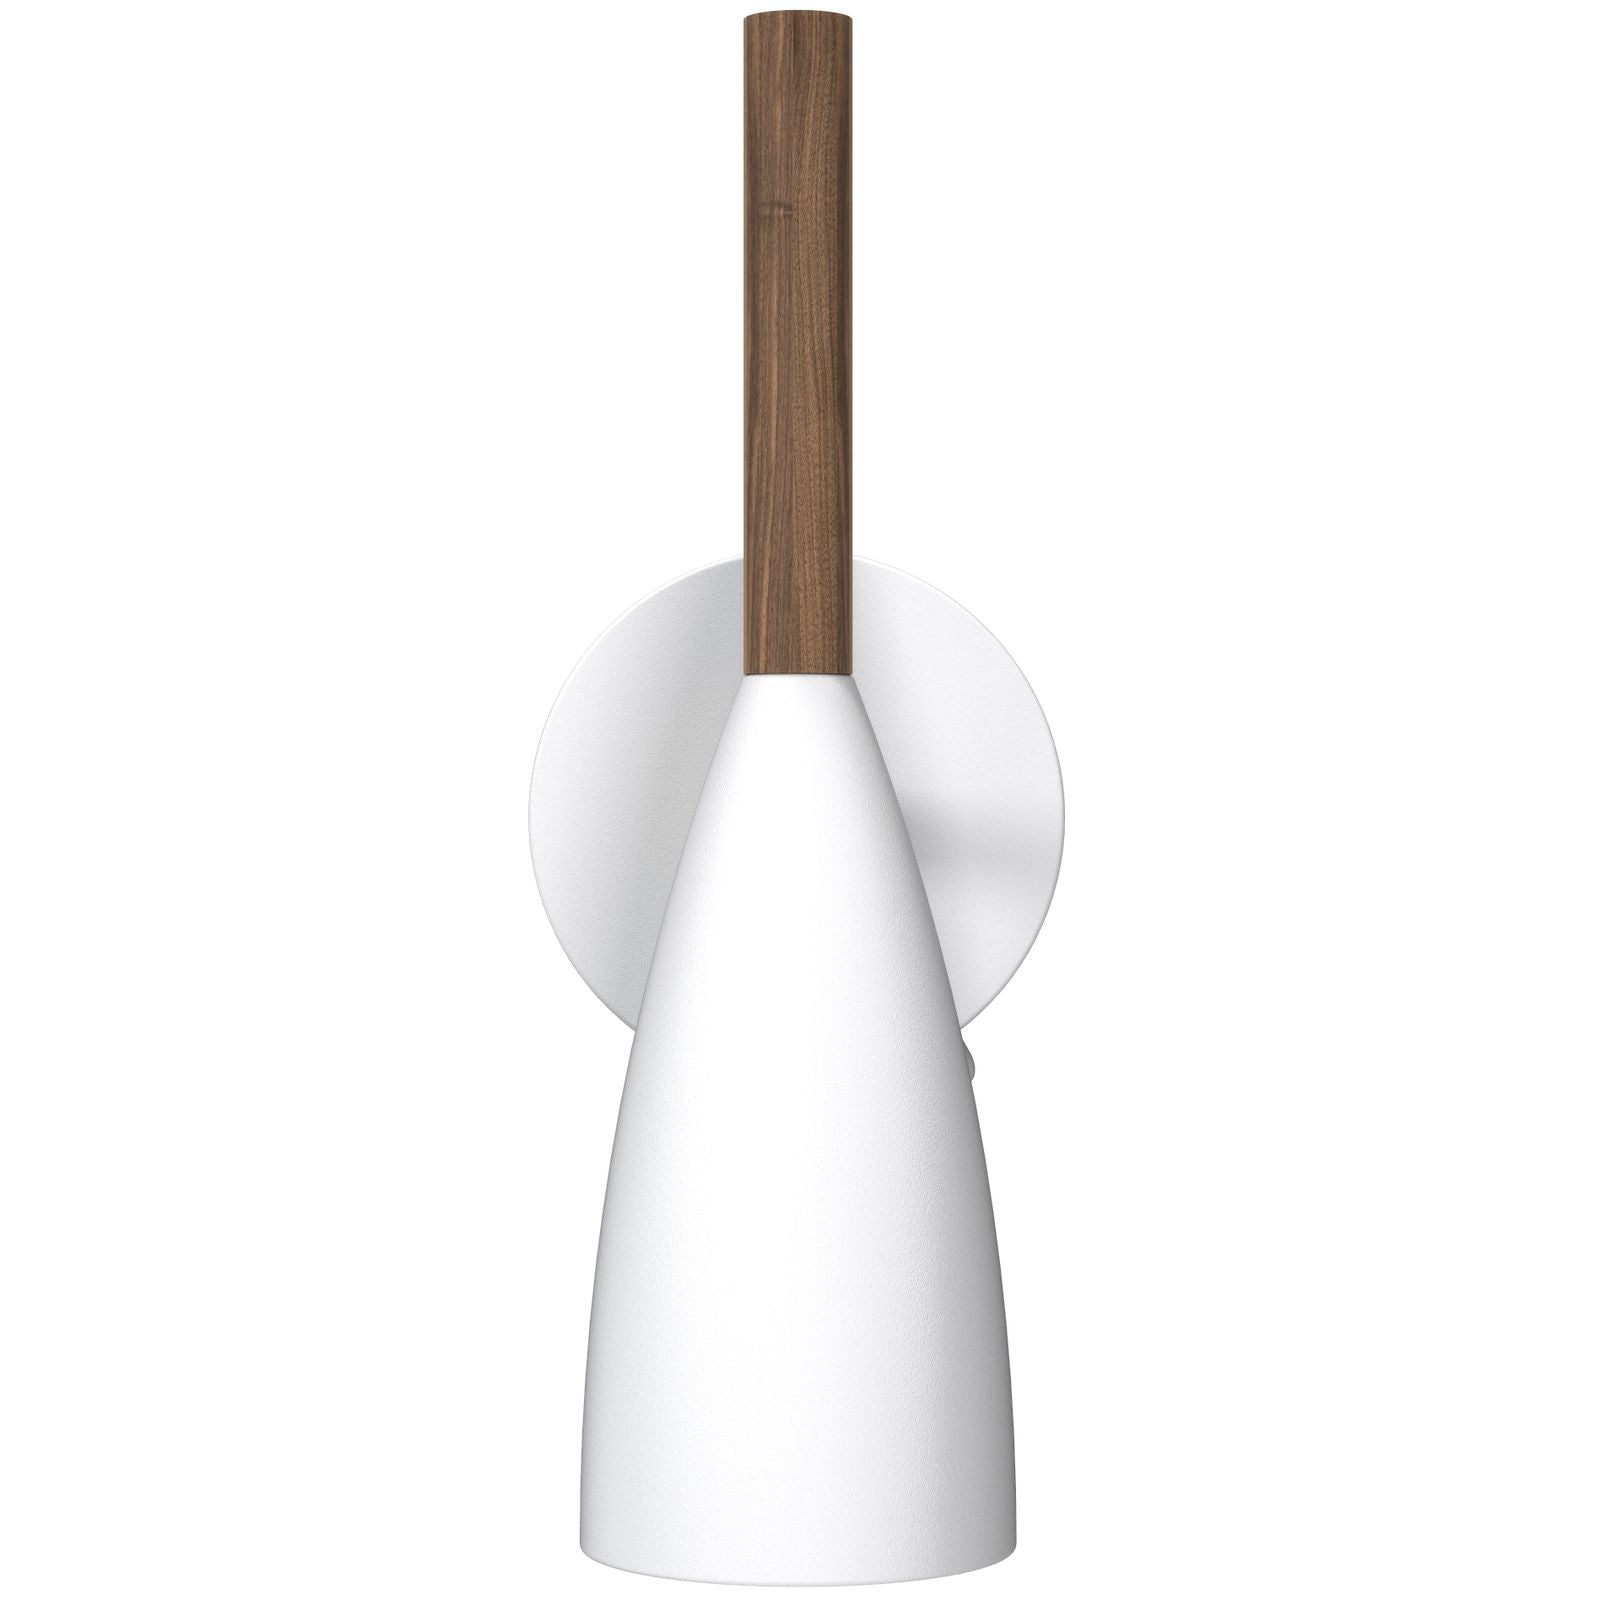 Nordlux - Pure 10 Væglampe Hvid - Design For The People fra Lampeexperten